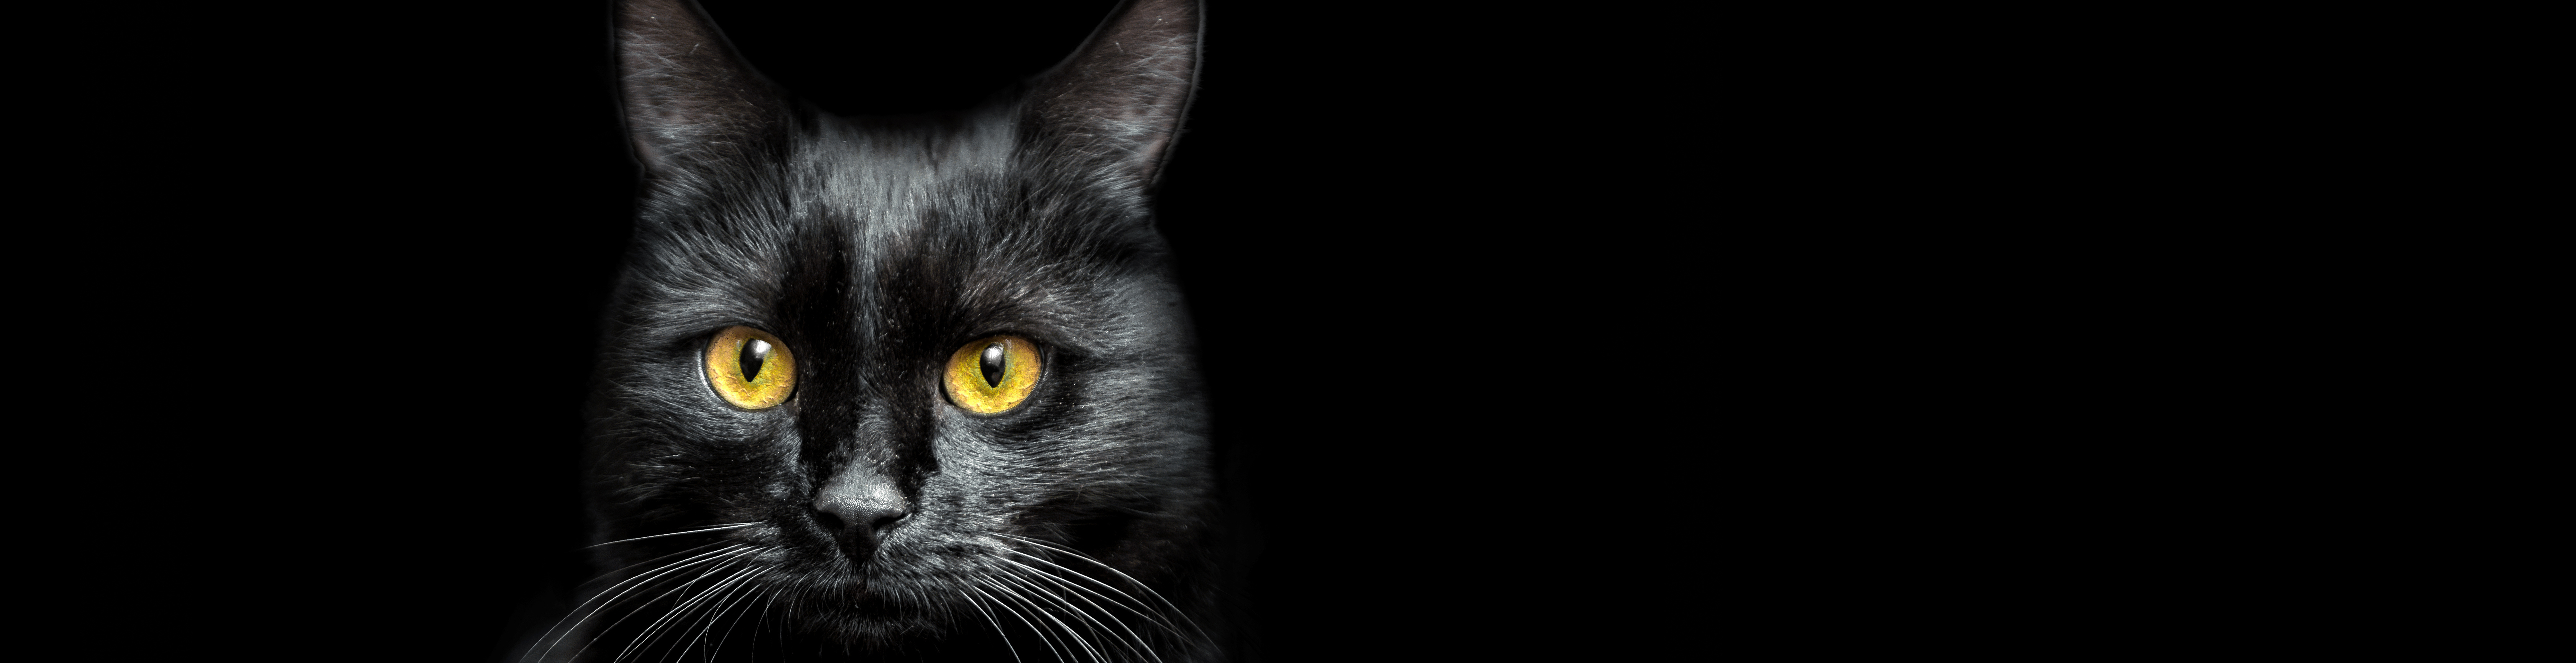 Toledo Animal Rescue : Adopt : Adopt Black Cats